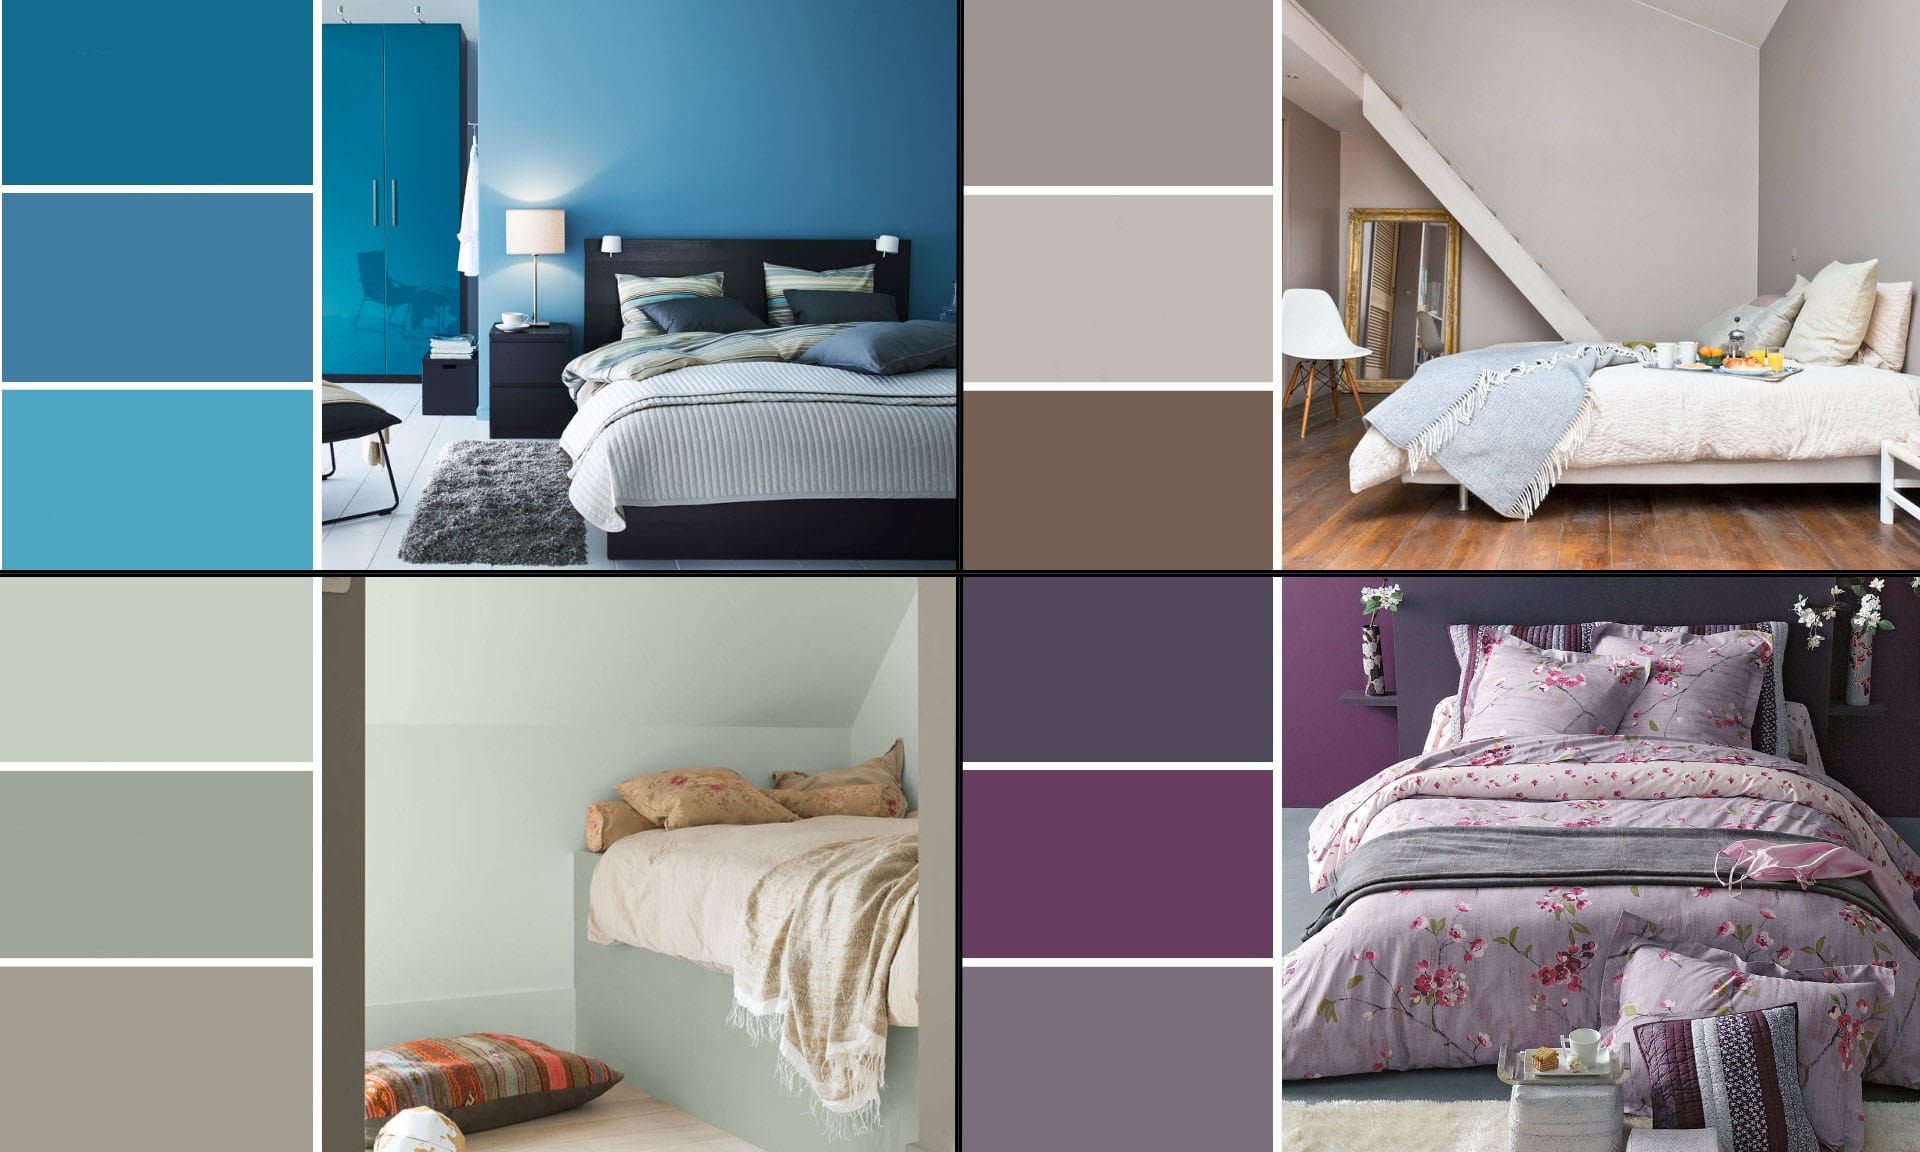 Peinture : Quelle couleur idéale pour la chambre à coucher ?